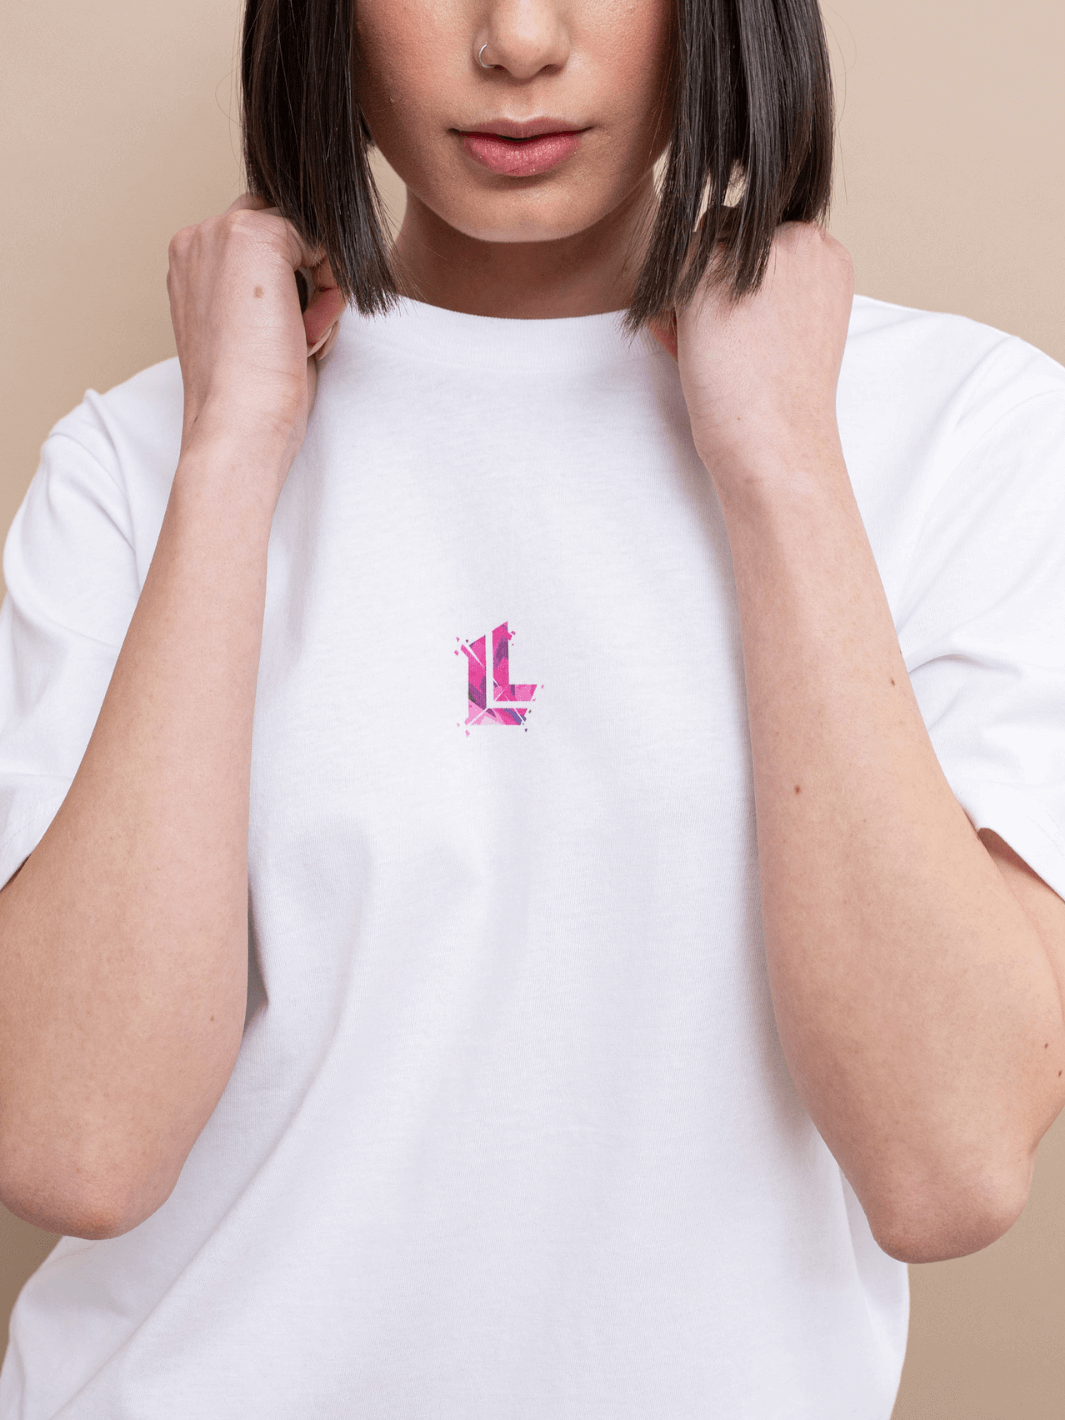 T-shirt essential Limitlex bianca con logo sul petto.